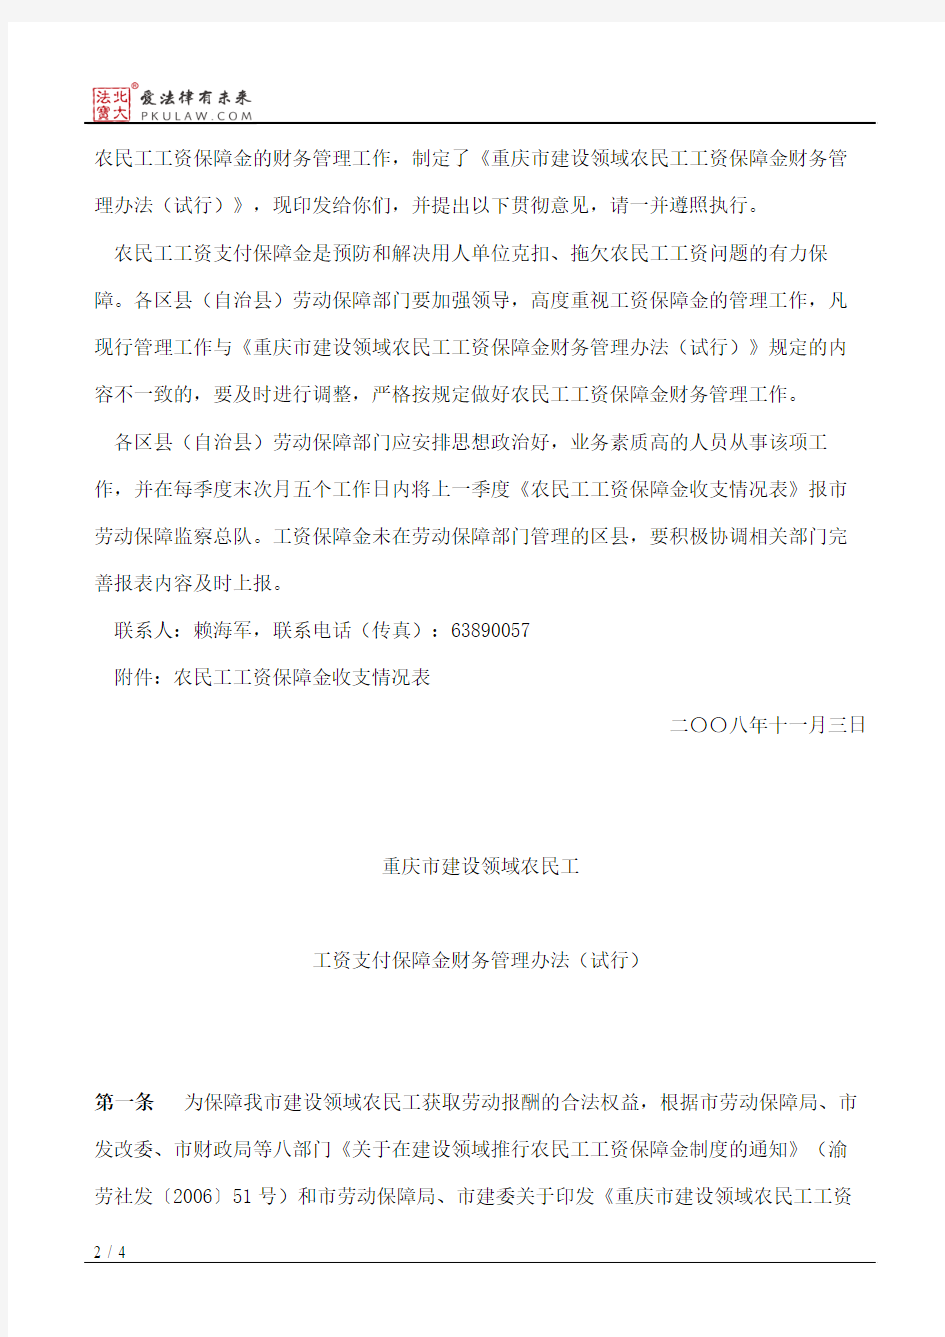 重庆市劳动和社会保障局关于印发重庆市建设领域农民工工资支付保